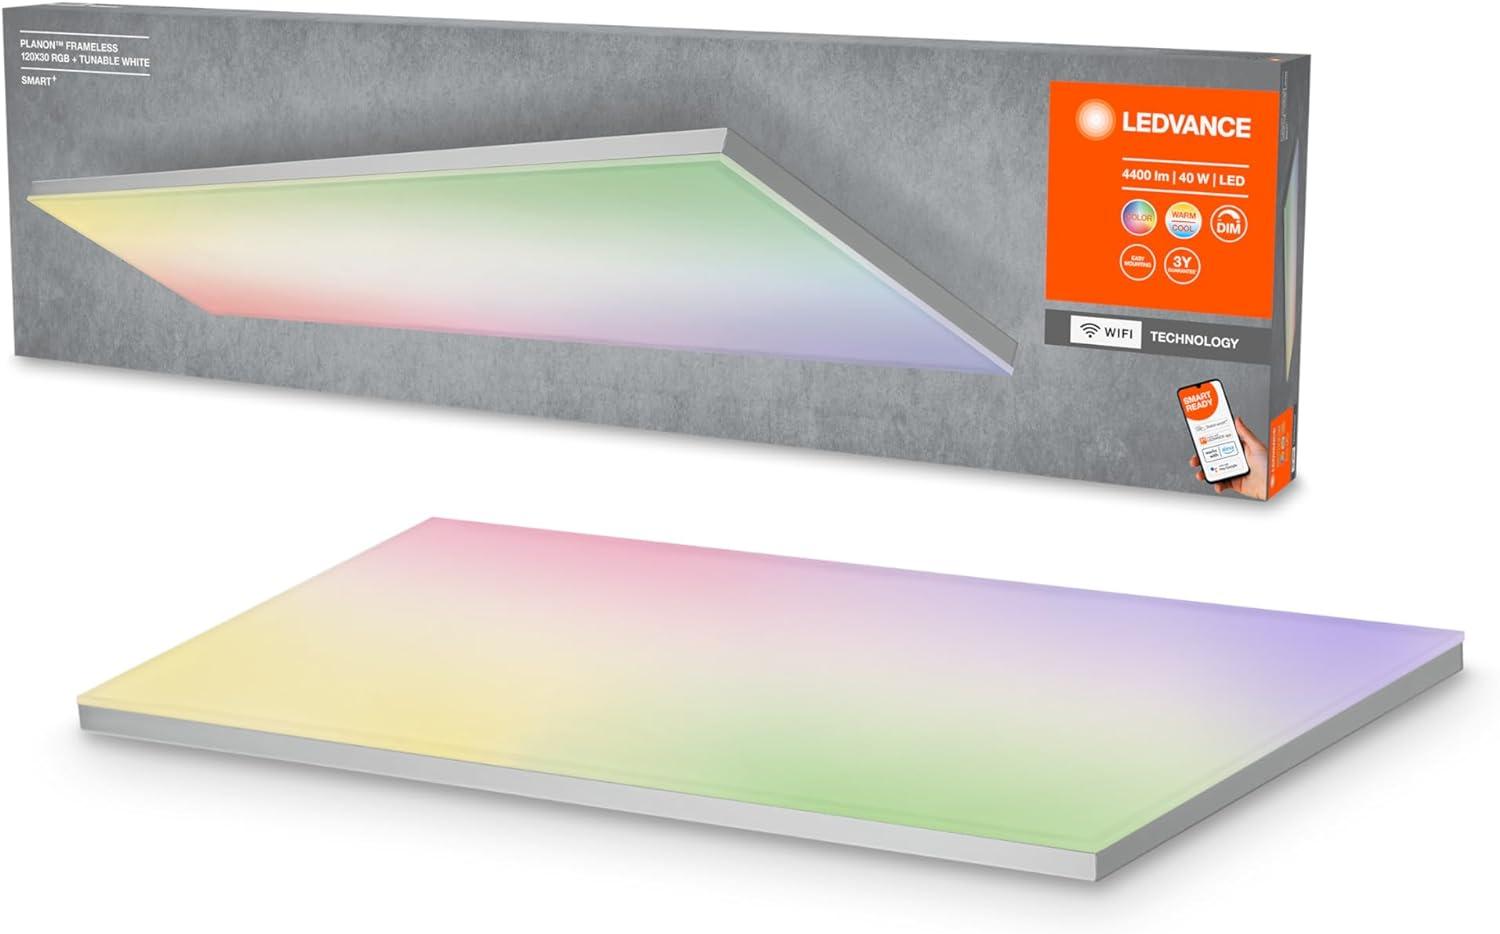 LEDVANCE Planon frameless rectangular smart CCT WIFI + RGB Bild 1